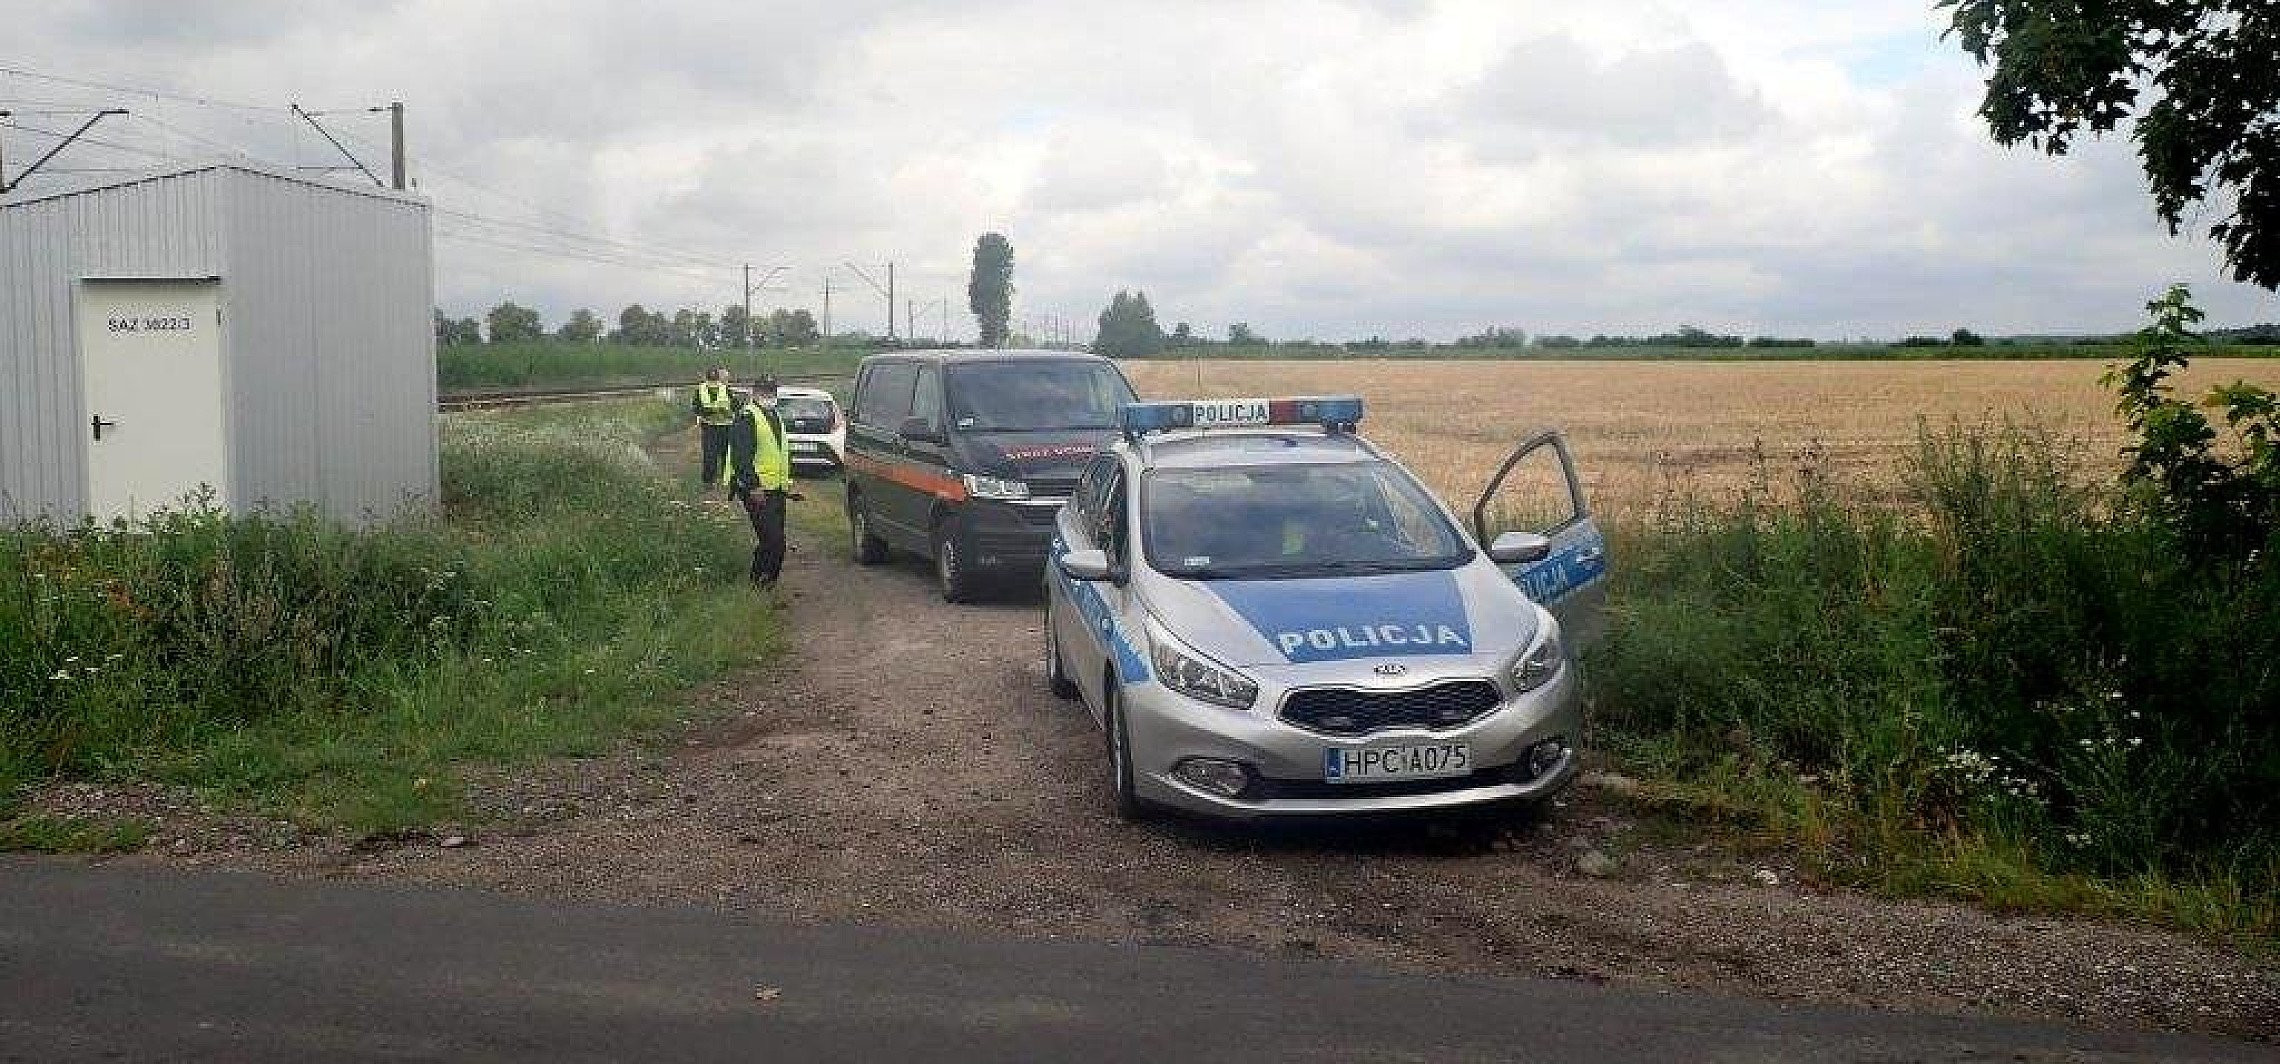 Inowrocław - Akcja policji przy przejeździe kolejowym